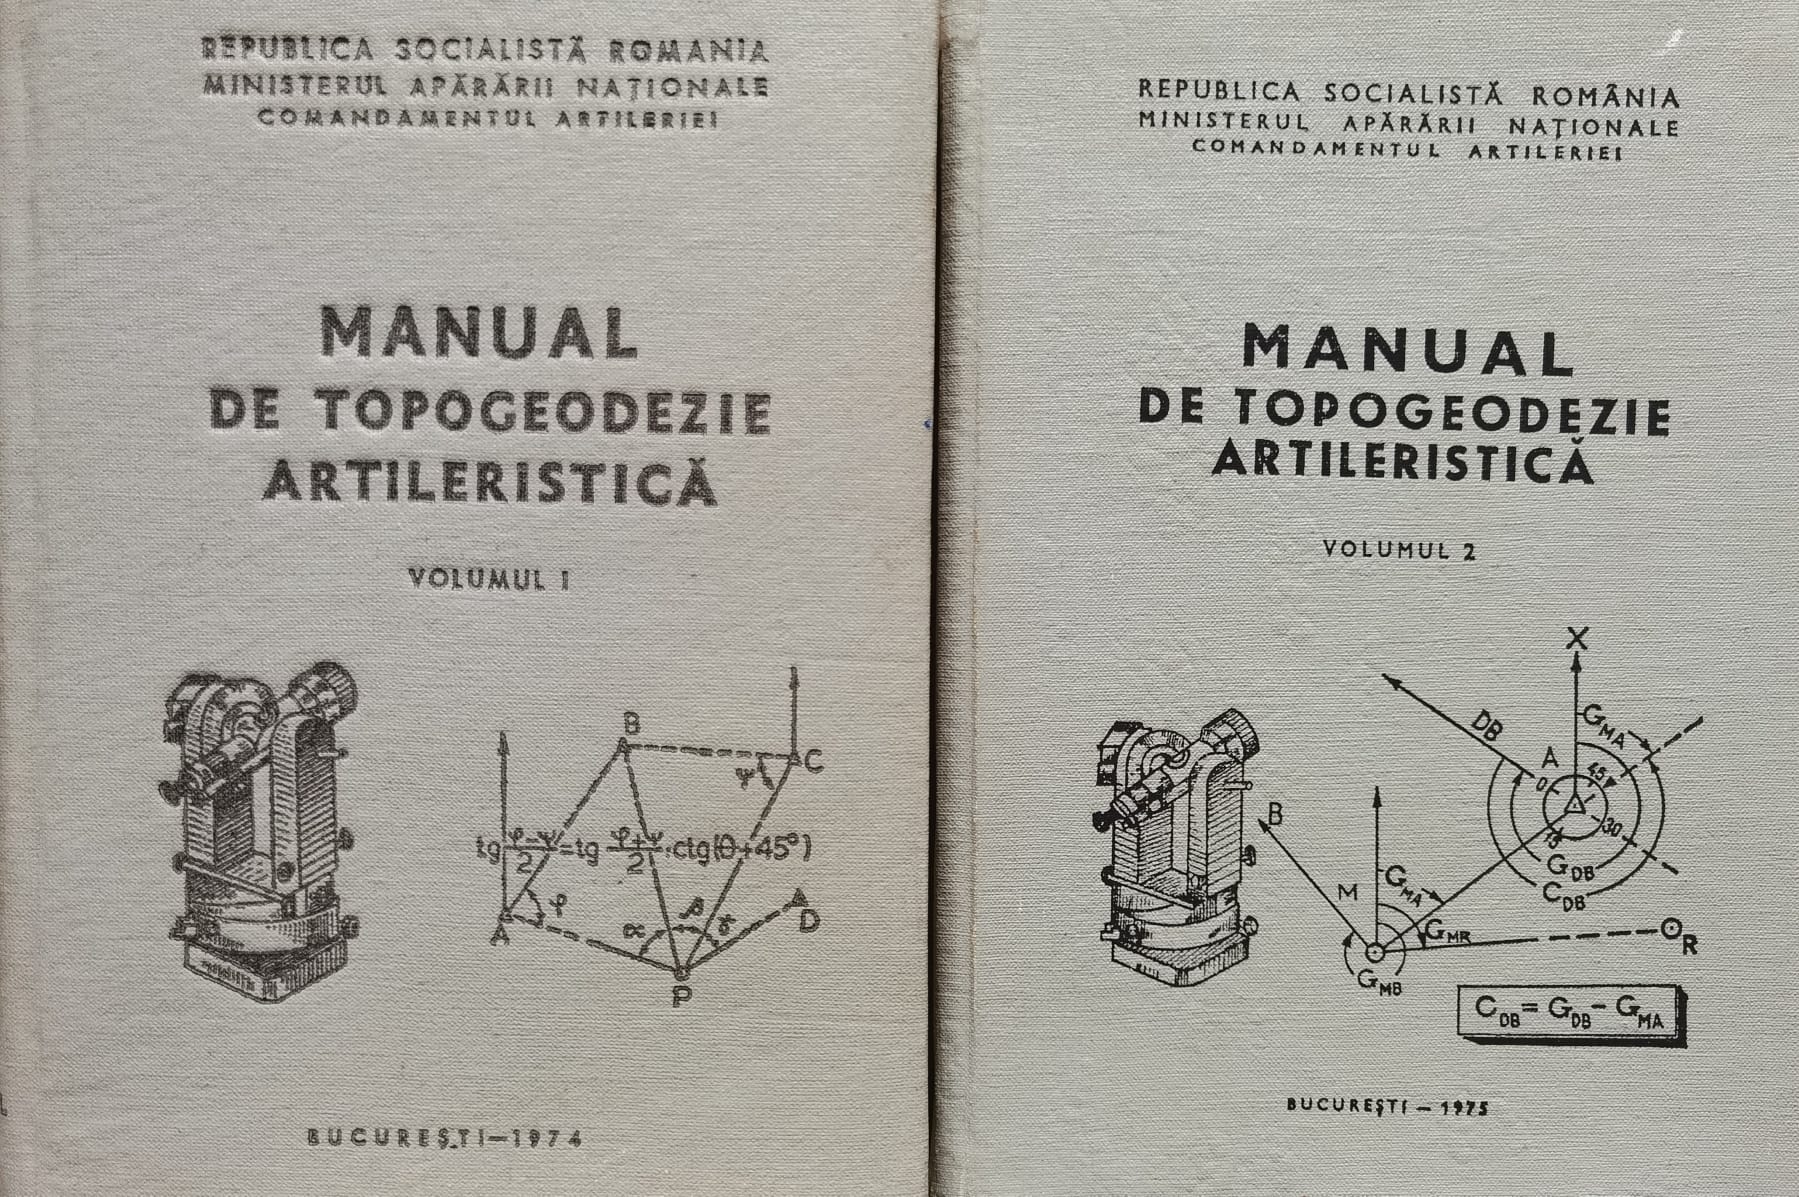 manual de topogeodezie artileristica vol. 1-2                                                        ionica boca                                                                                         